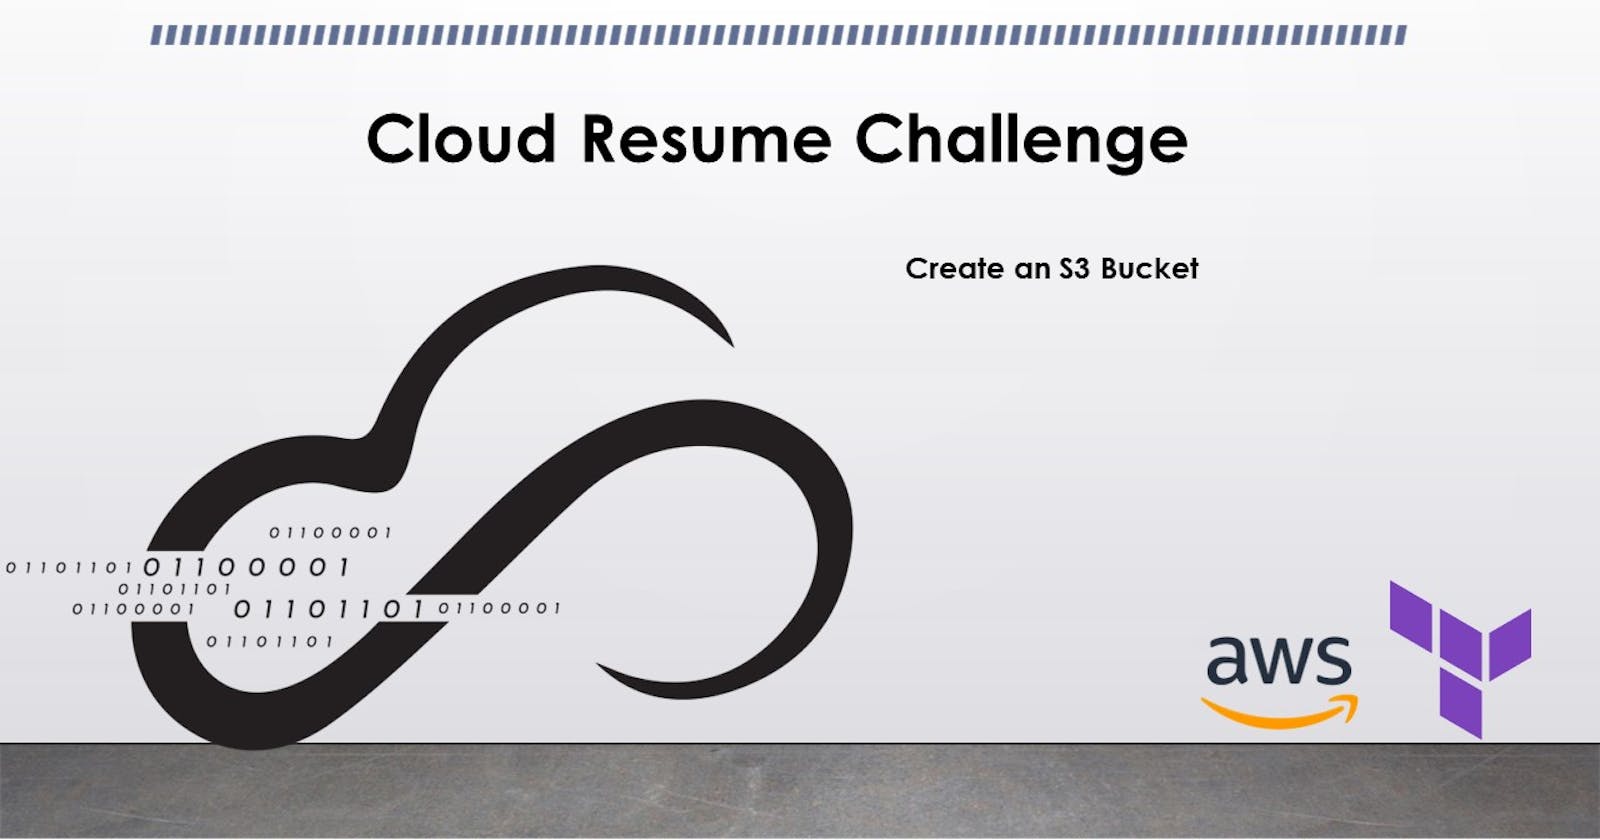 3. Cloud Resume Challenge: Creating S3 Bucket